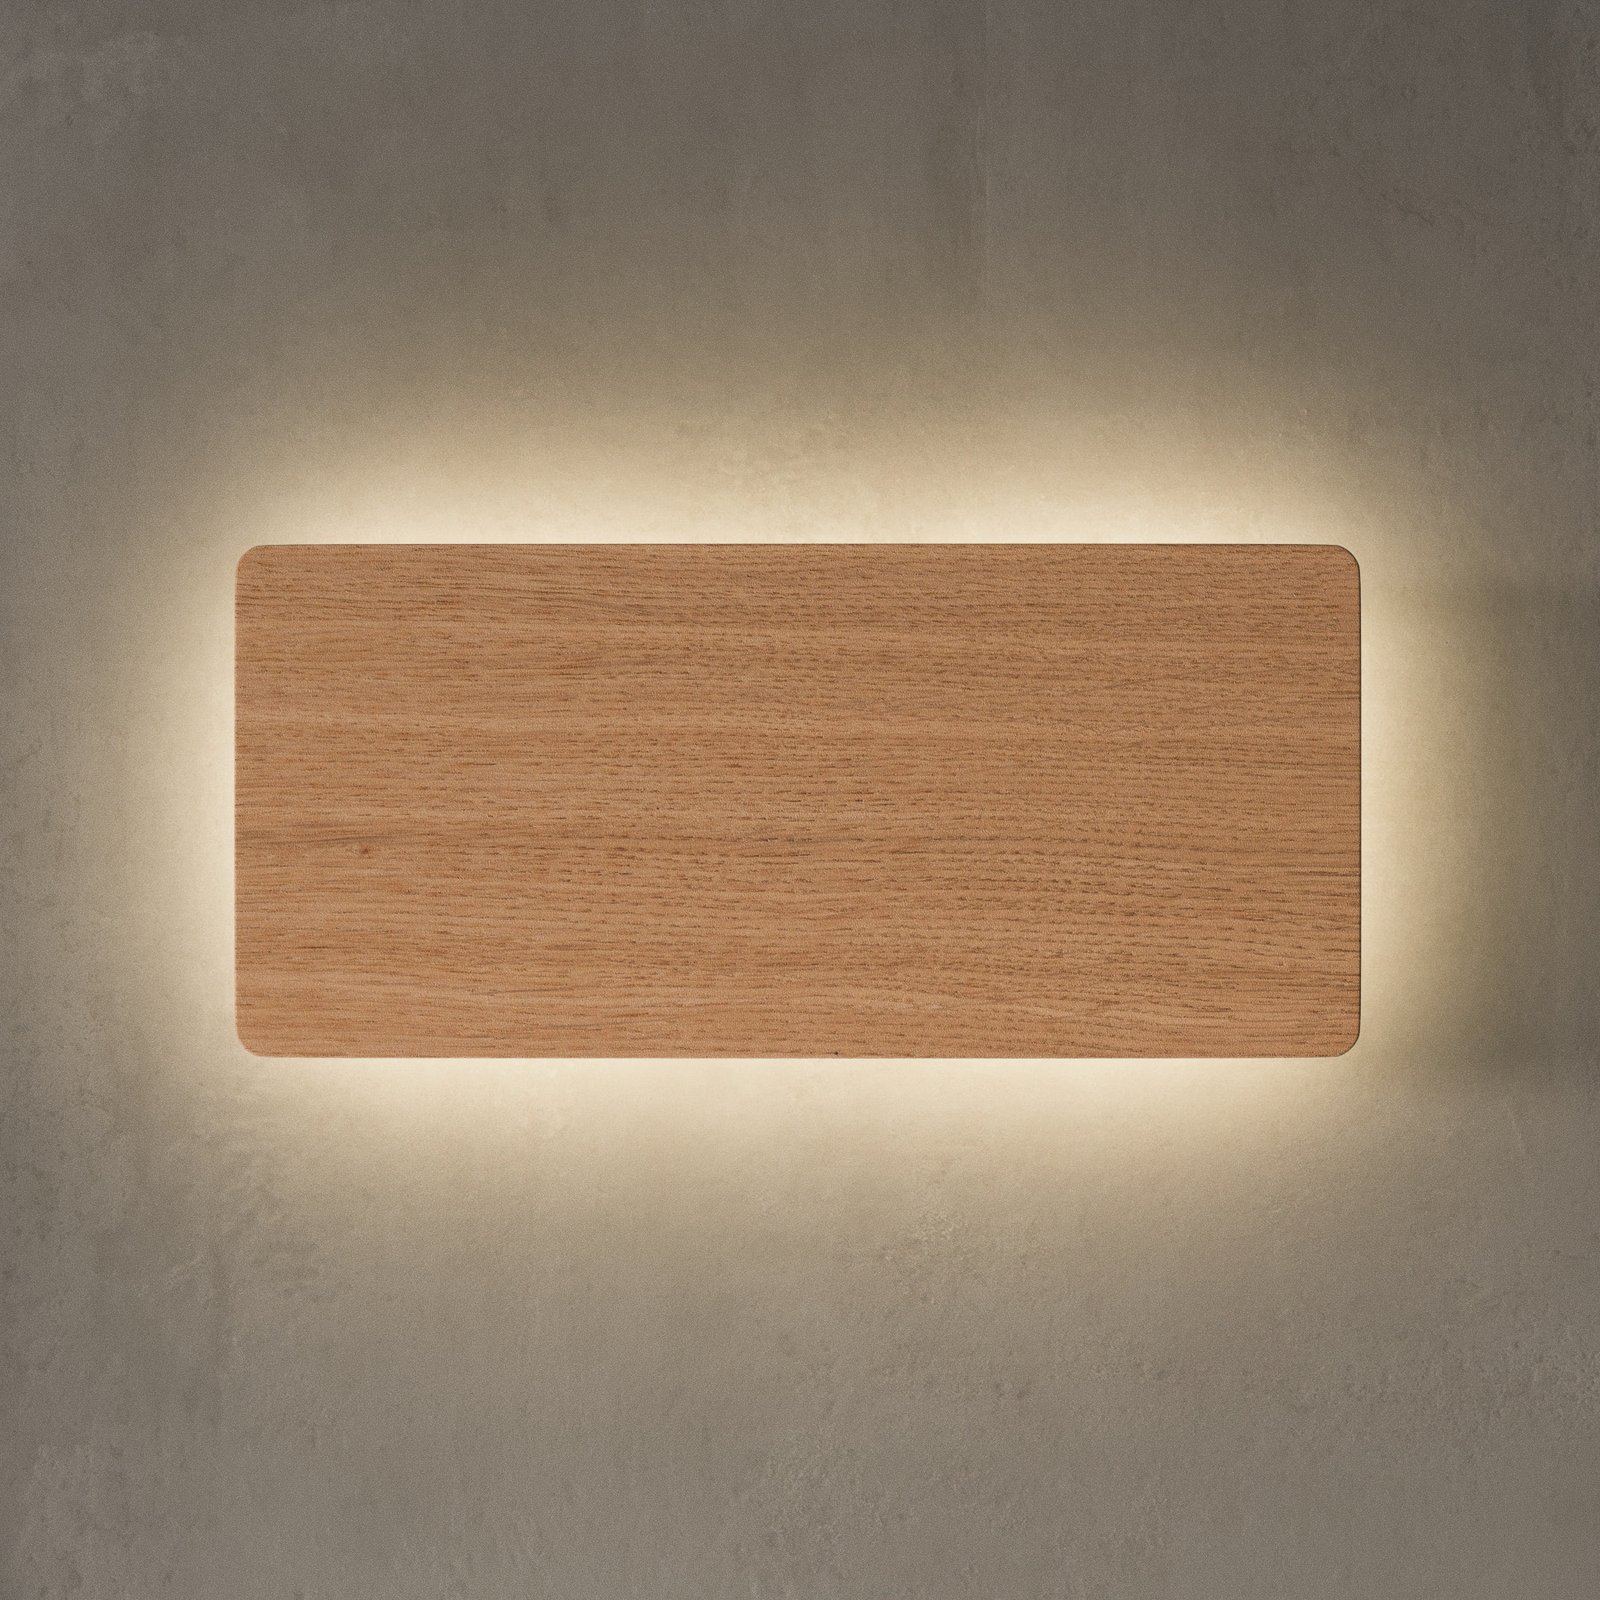 Envolight Tavola aplique, madera de roble, 35x16cm